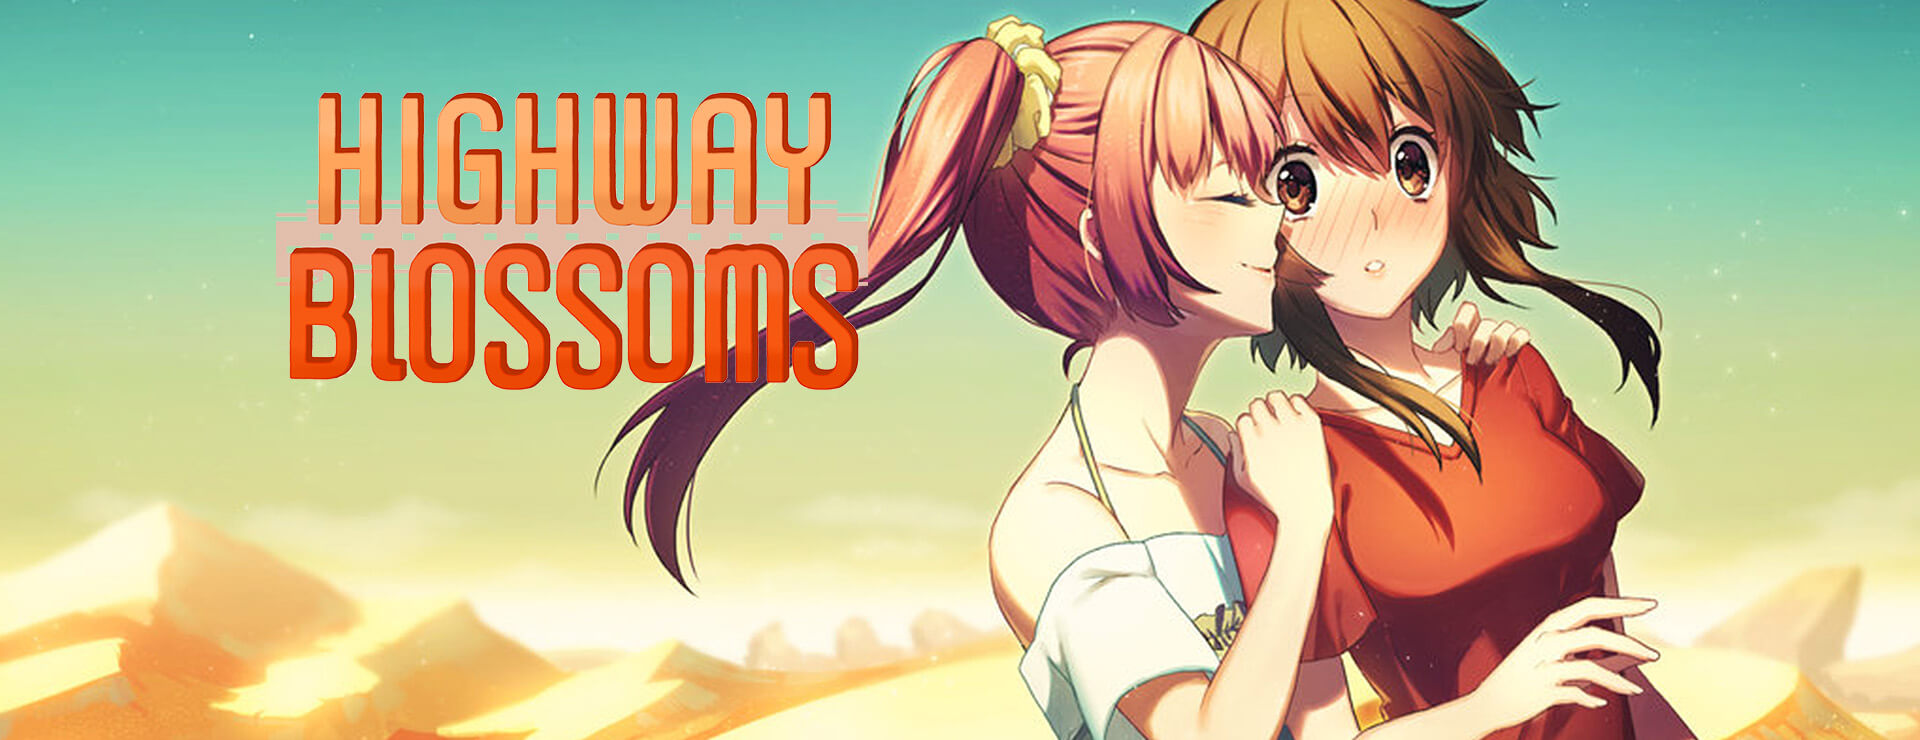 Highway Blossoms - Visual Novel Yuri Game